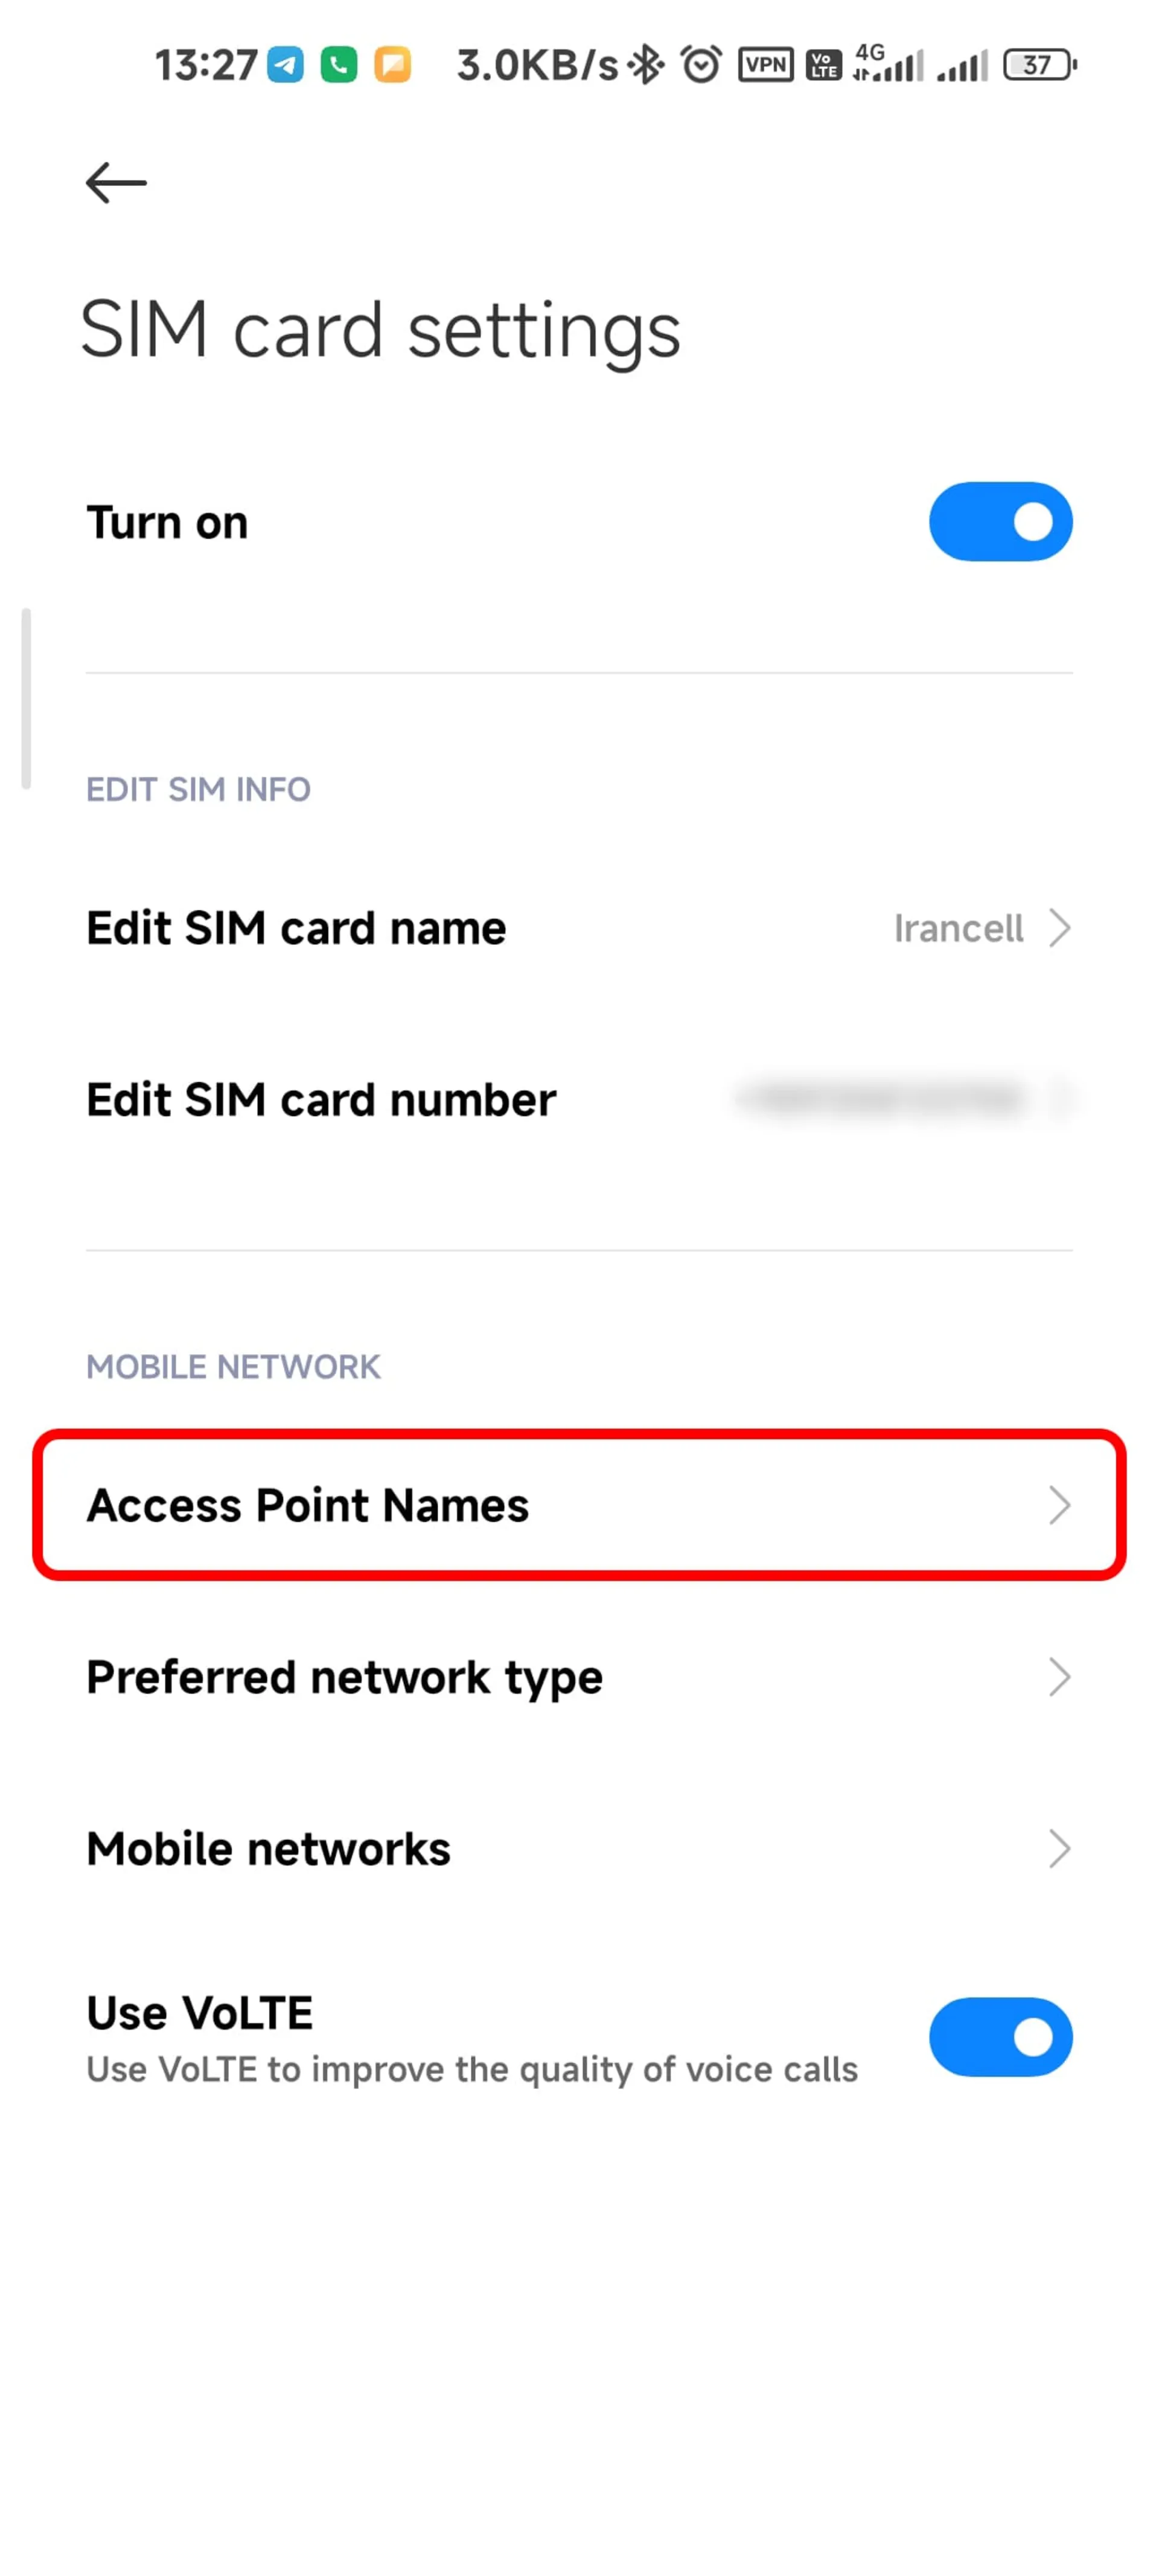 انتخاب Access point names